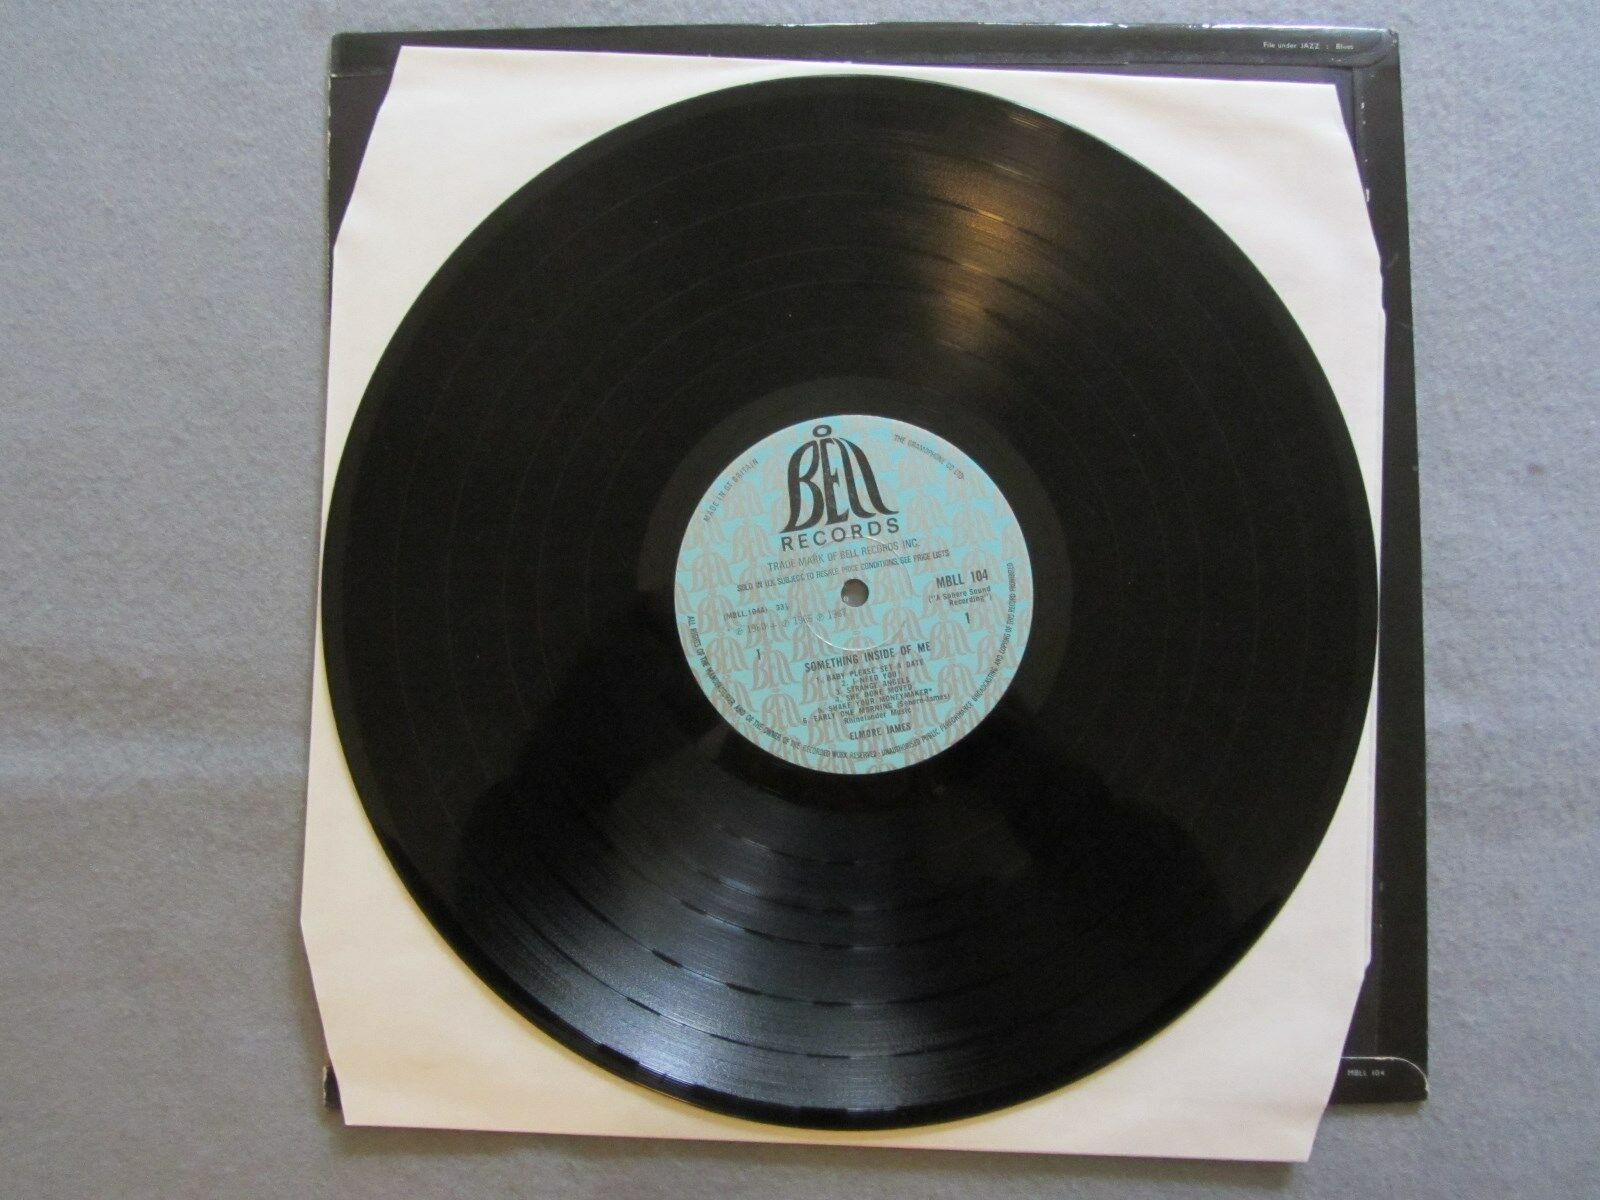 Pic 2 Elmore James – Something inside of me Vinyl LP (Bell 1968) EX+/EX+